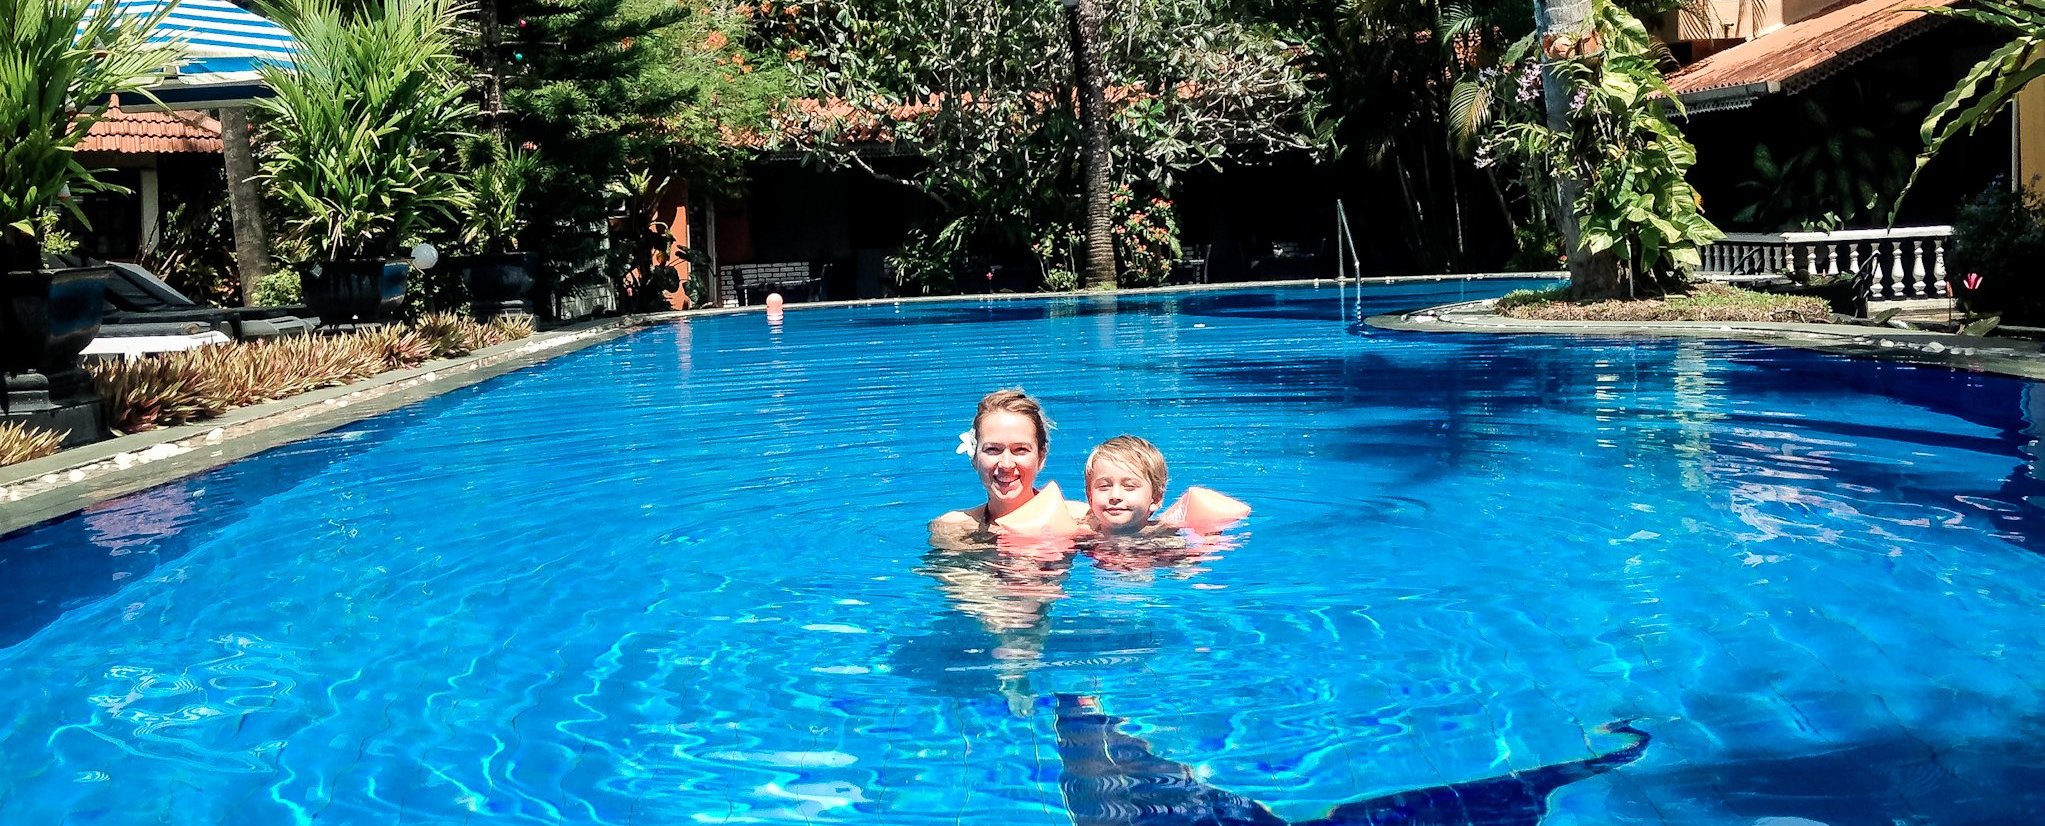 Familienreise - Sri Lanka mit Kinder - Bloggerin Tatjana Lieblingsspot - Pool